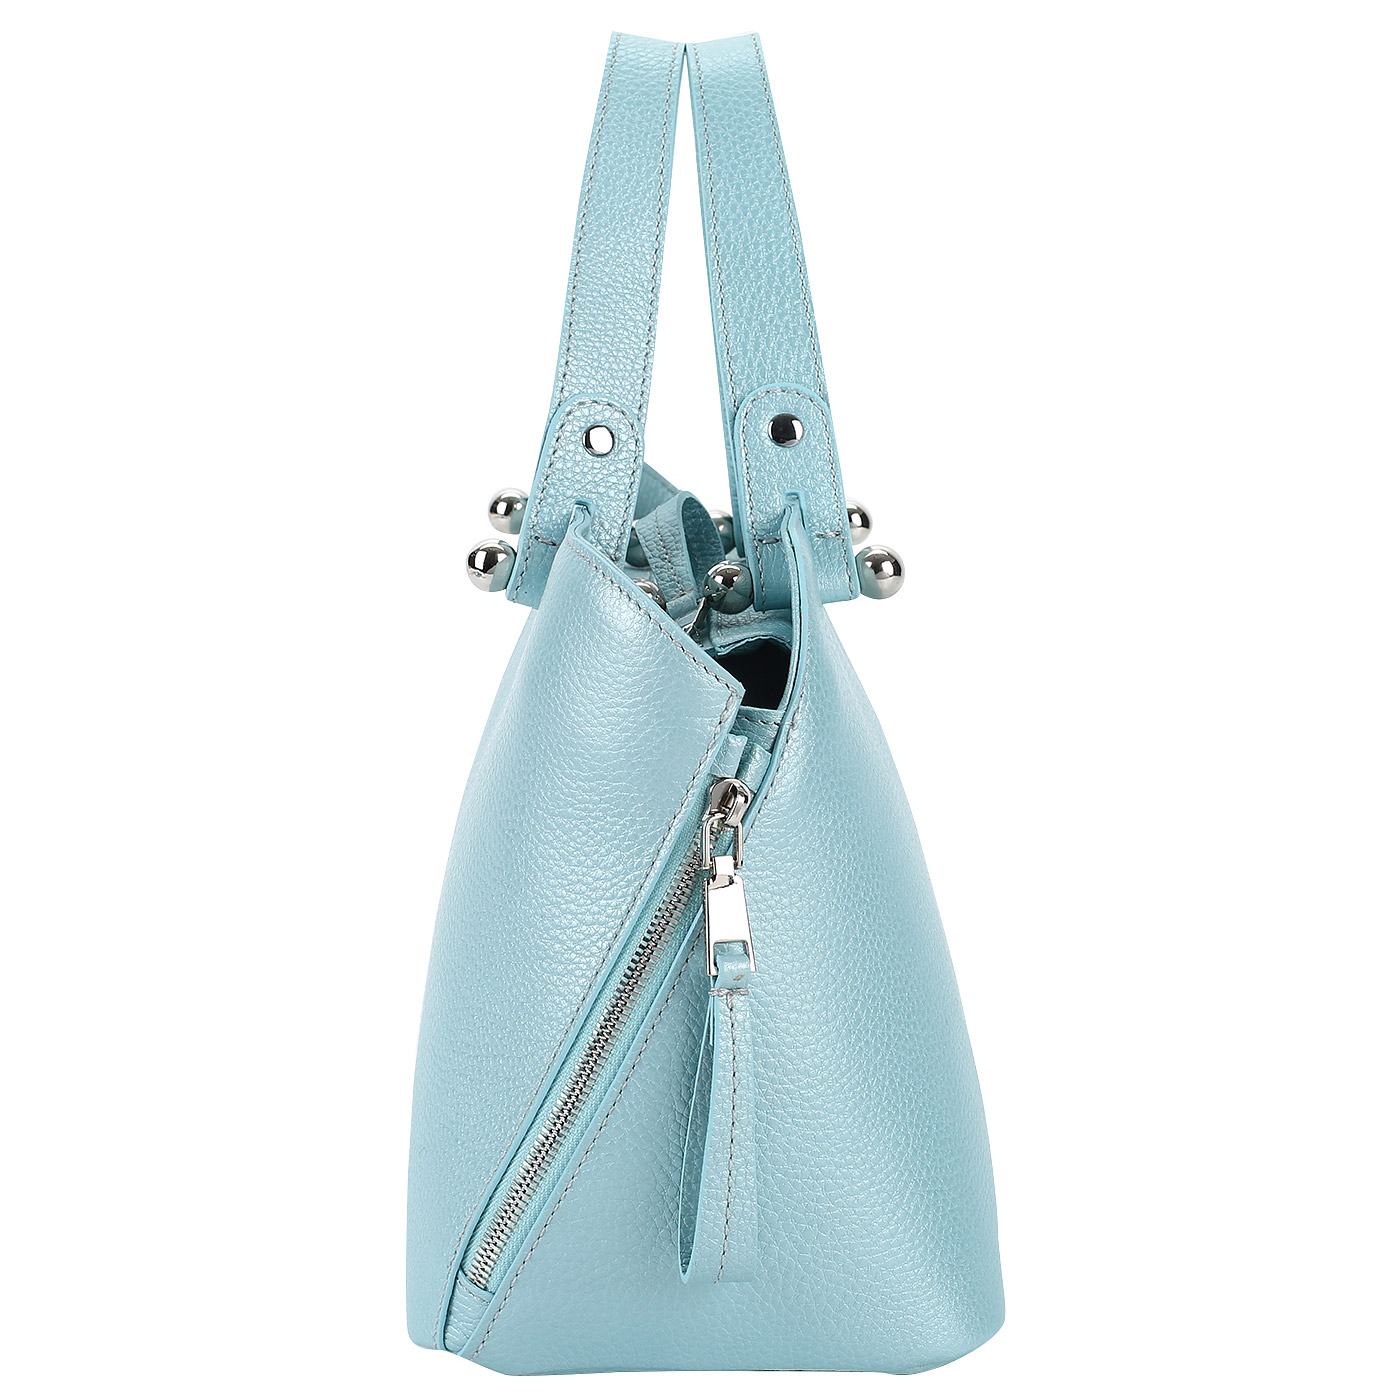 Кожаная женская сумка голубого цвета Chatte 